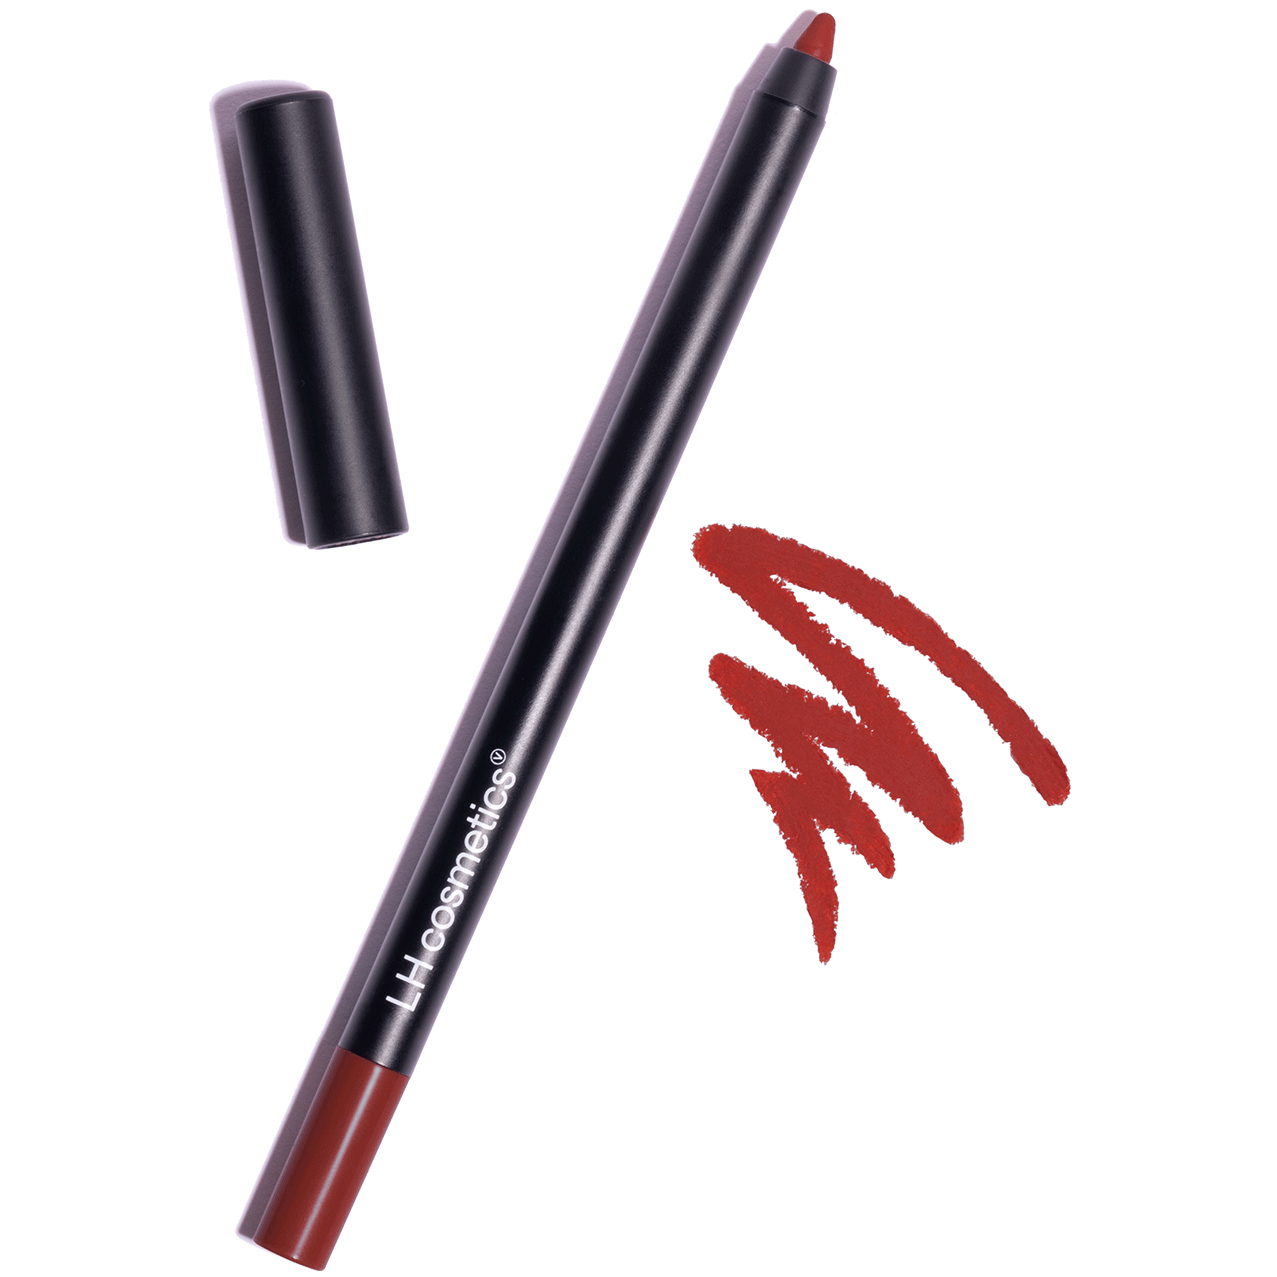 LH cosmetics Crayon Cherry (7350003902270)